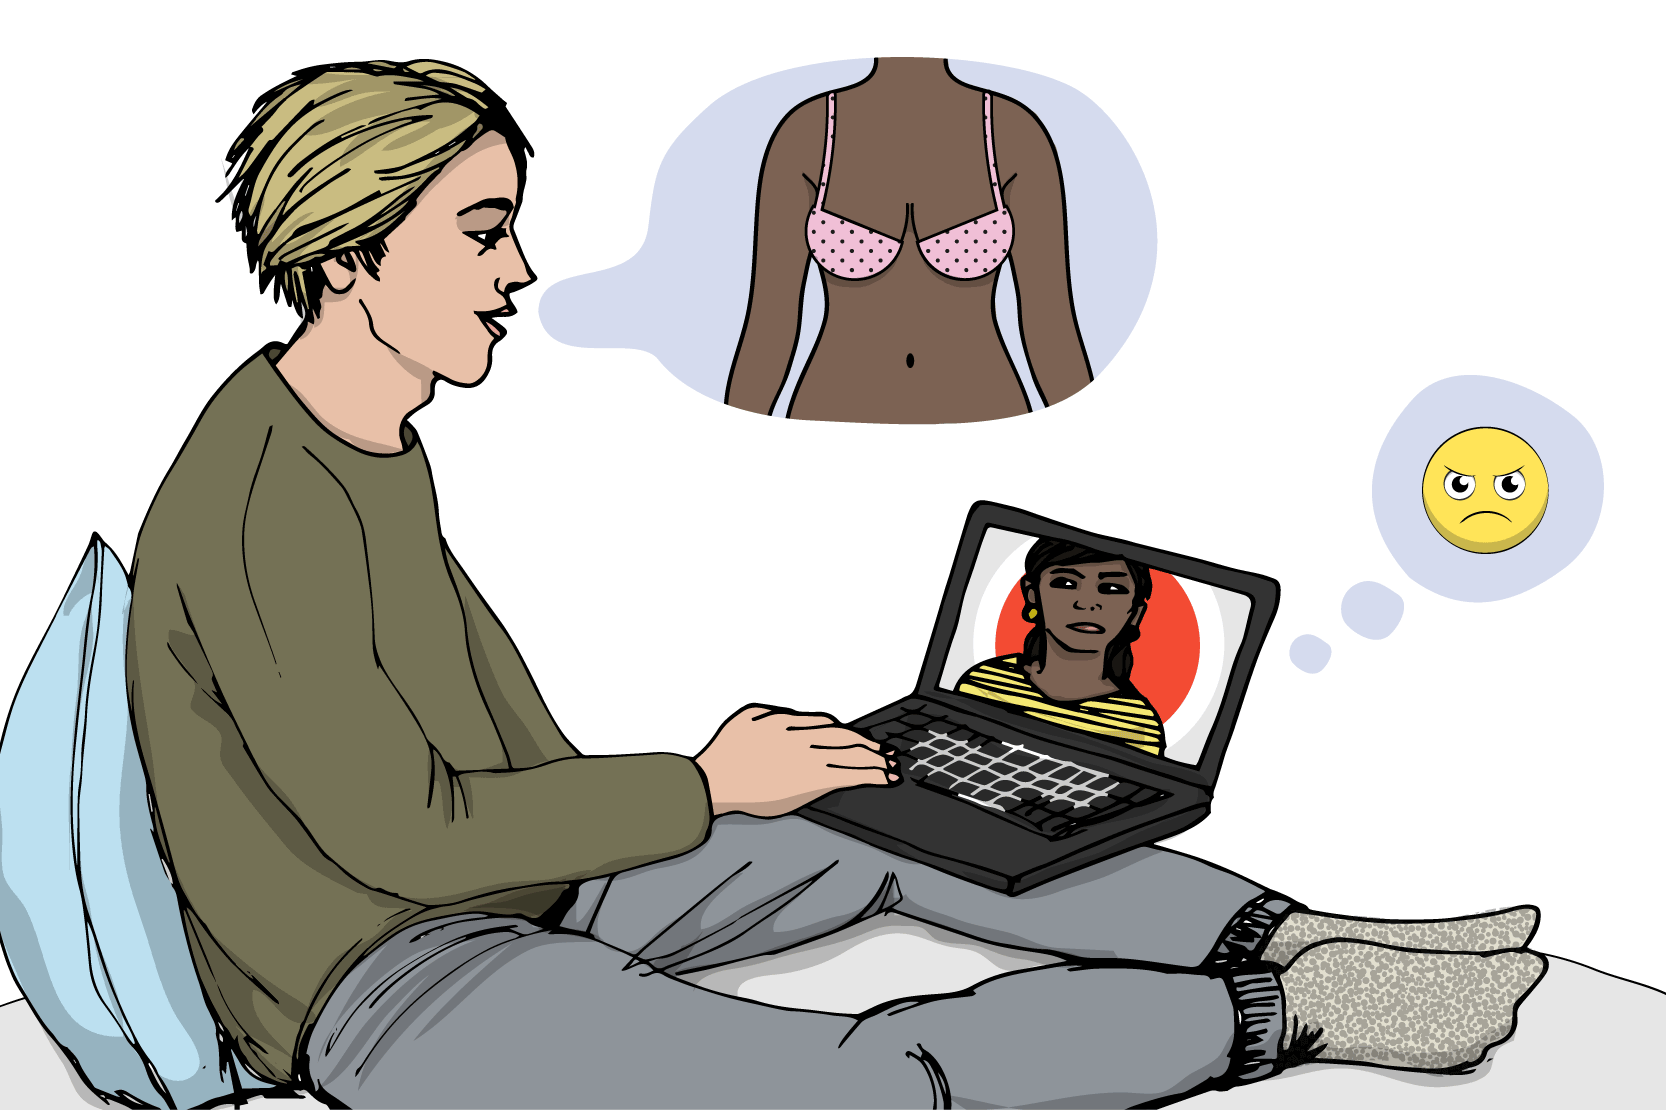 Två personer chattar och den ena ber den andra ta av sig tröjan. På datorskärmen syns hur den andra personen blir arg. Illustration.